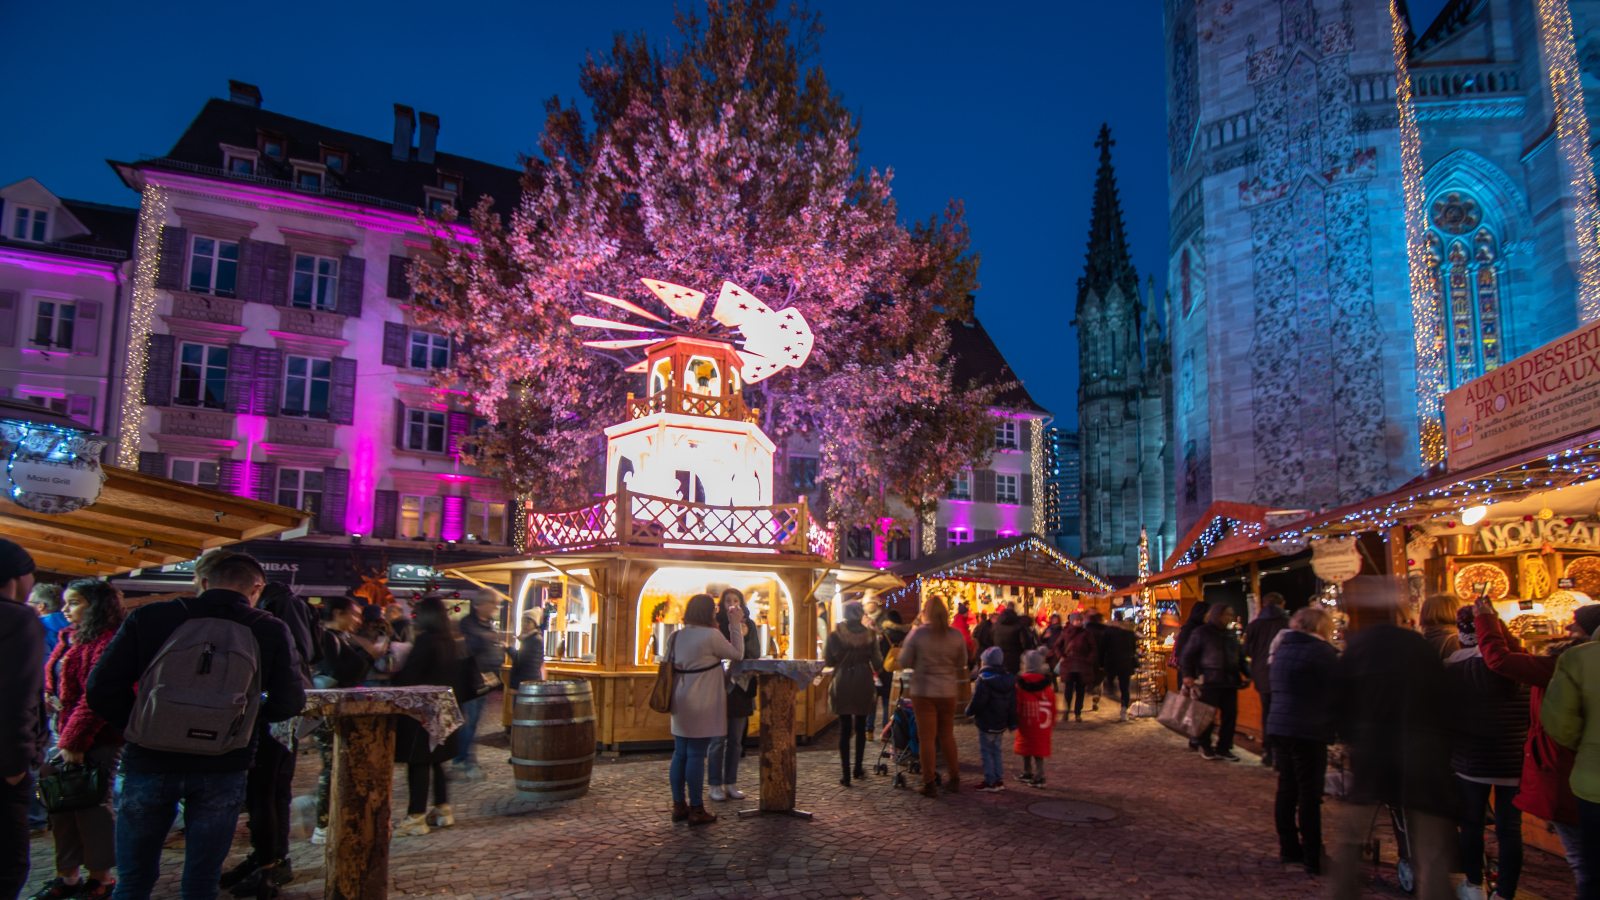 Marché de Noël de Mulhouse - Alsace